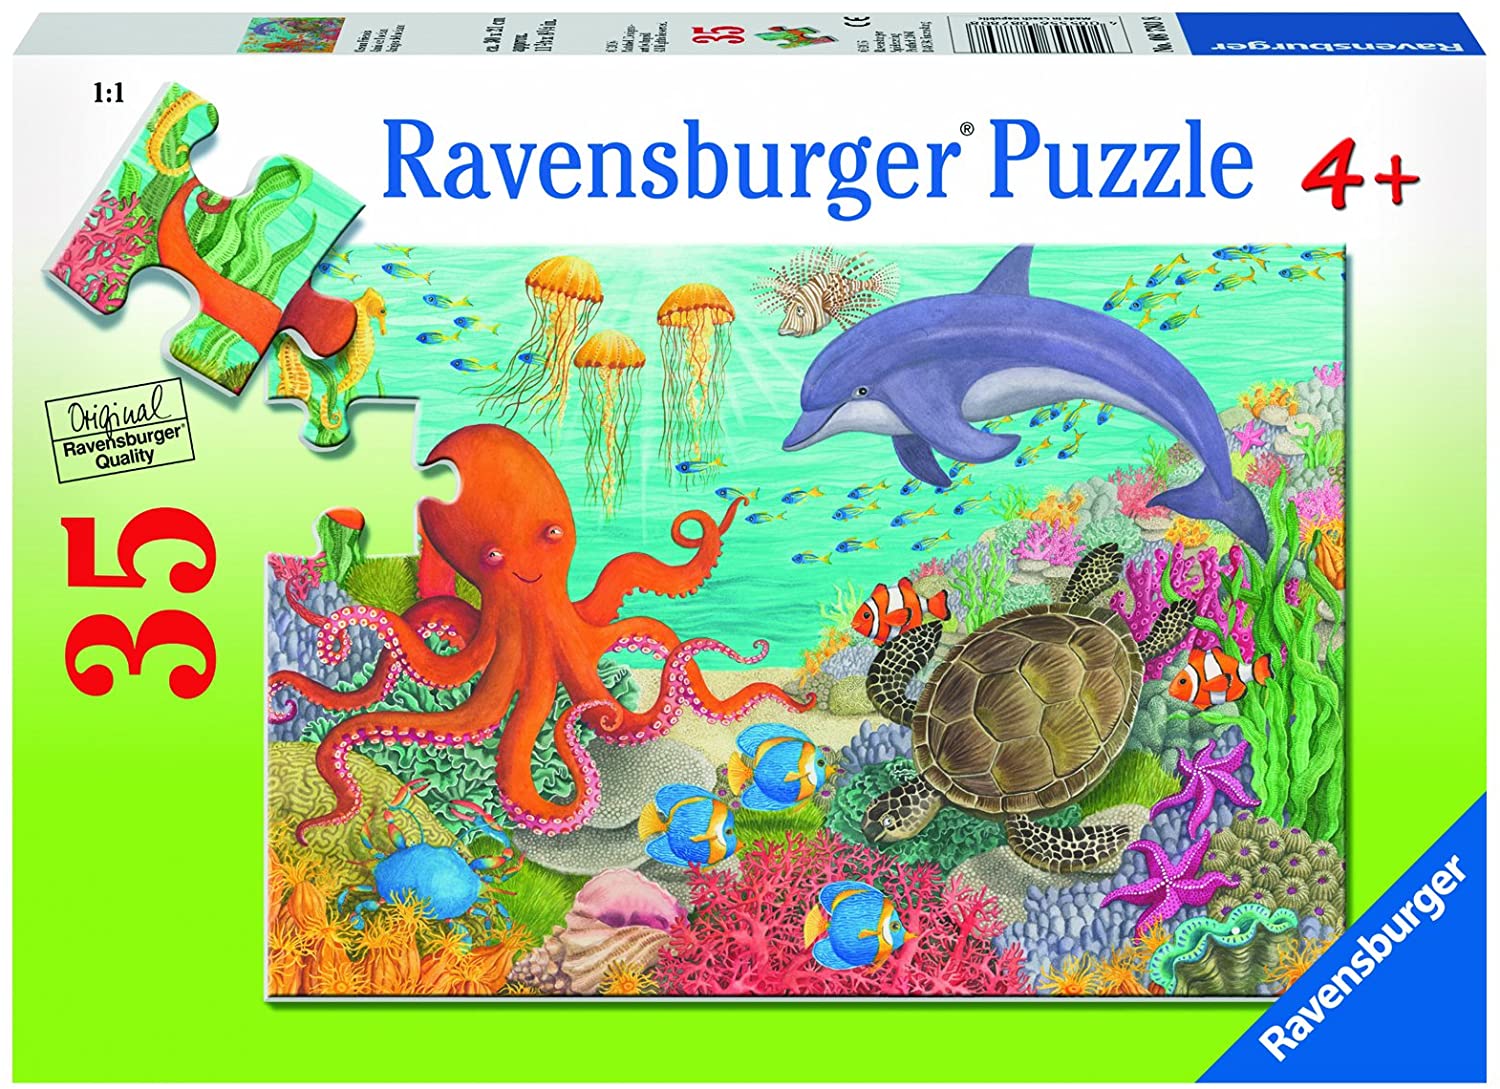 Ravensburger Ocean Friends Puzzle 35 piece 08780